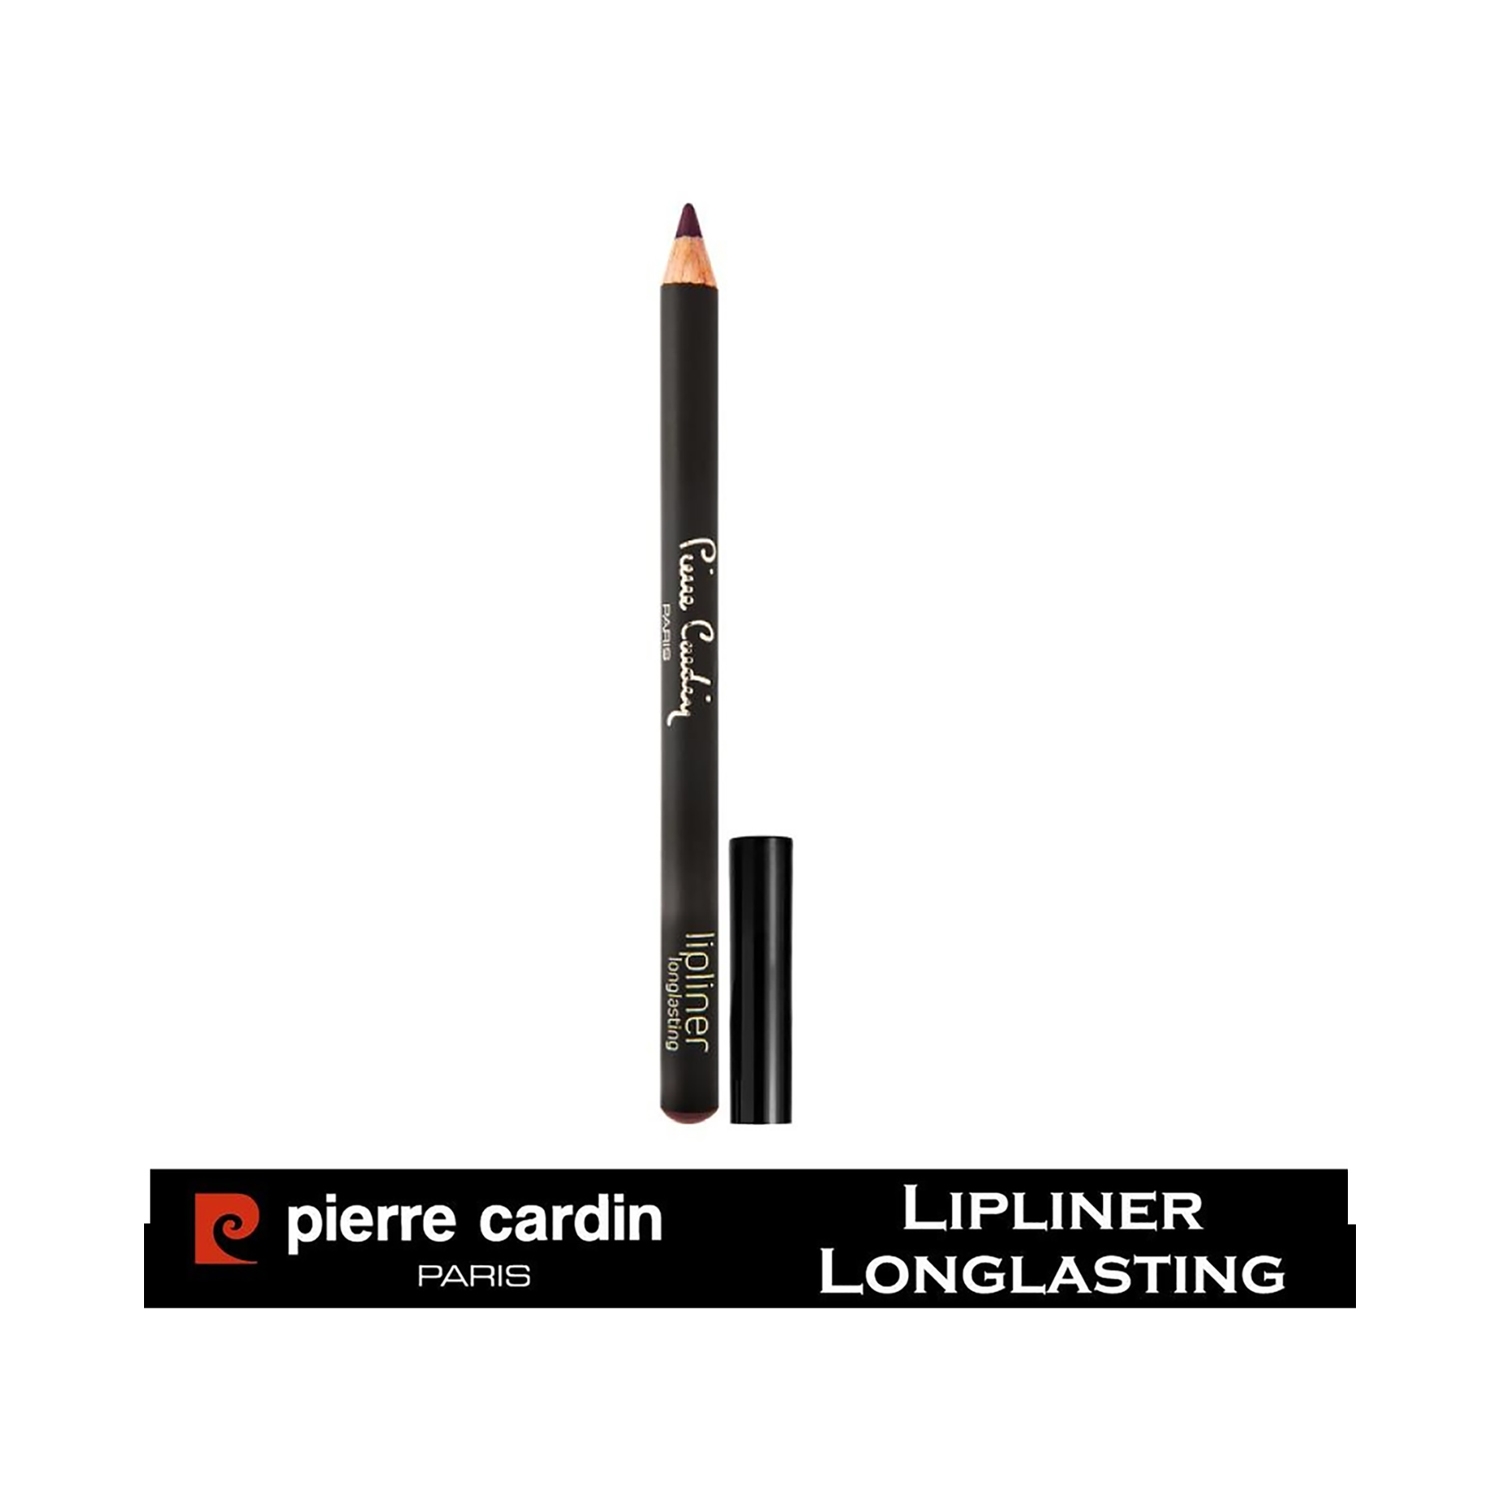 Pierre Cardin Paris | Pierre Cardin Paris Longlasting Lip Liner Pencil - 405 Pure Violet (0.4g)